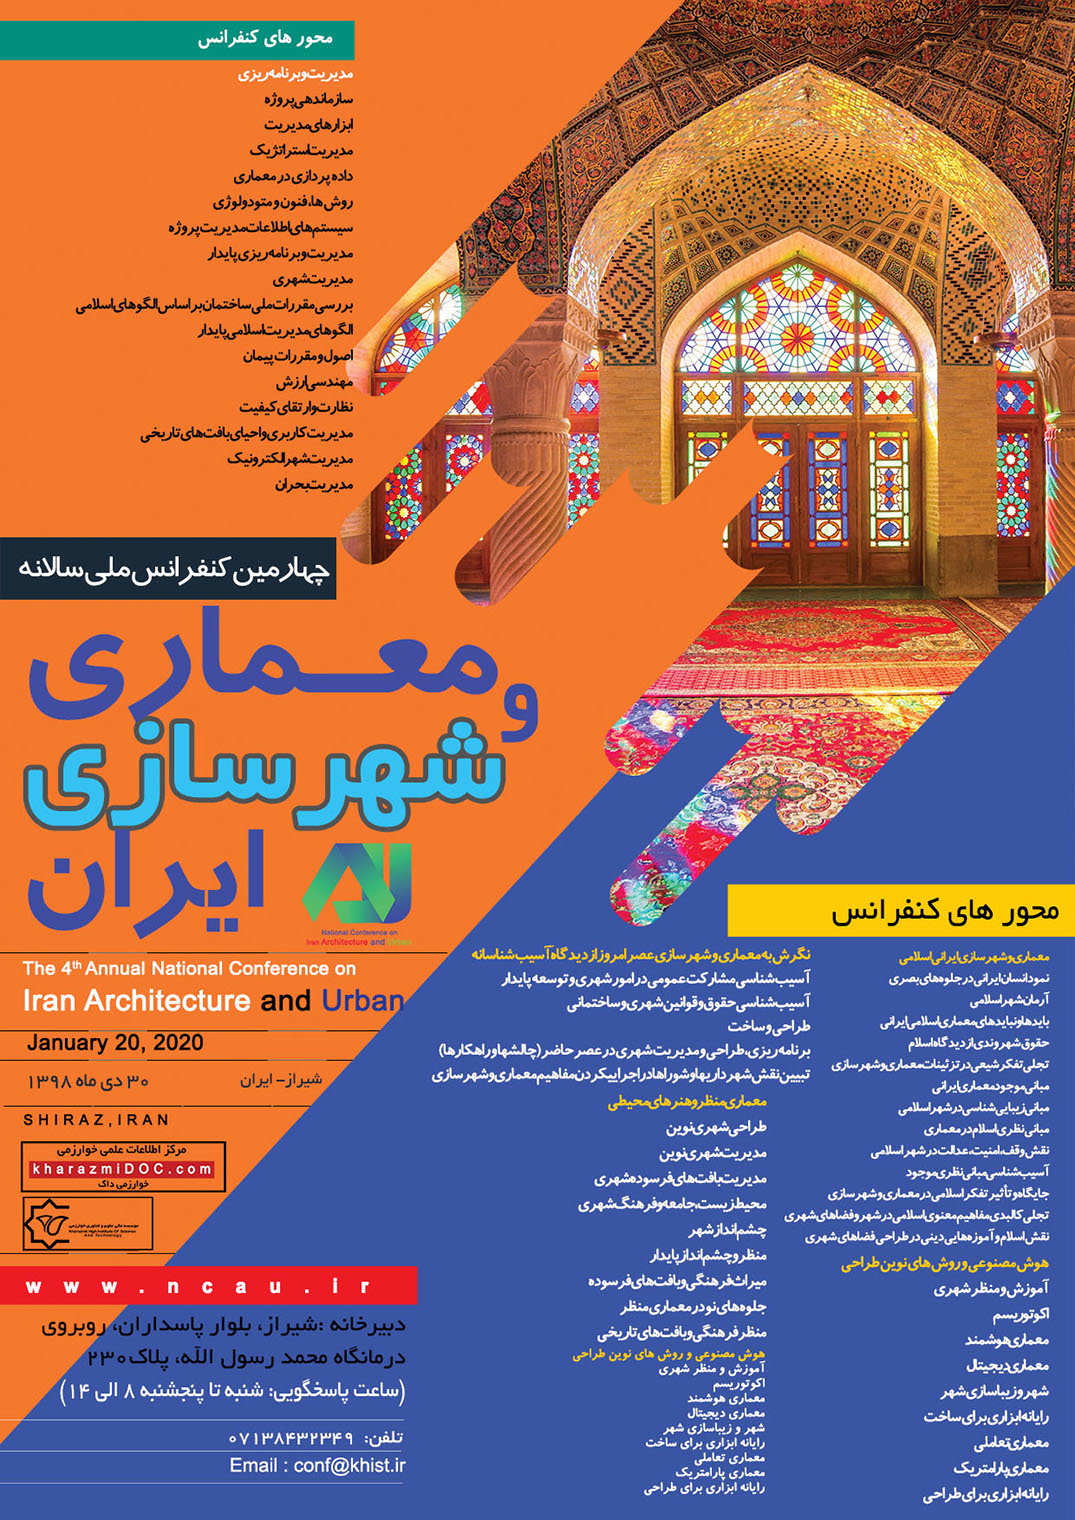 پوستر چهارمین کنفرانس ملی سالانه معماری و شهرسازی ایران